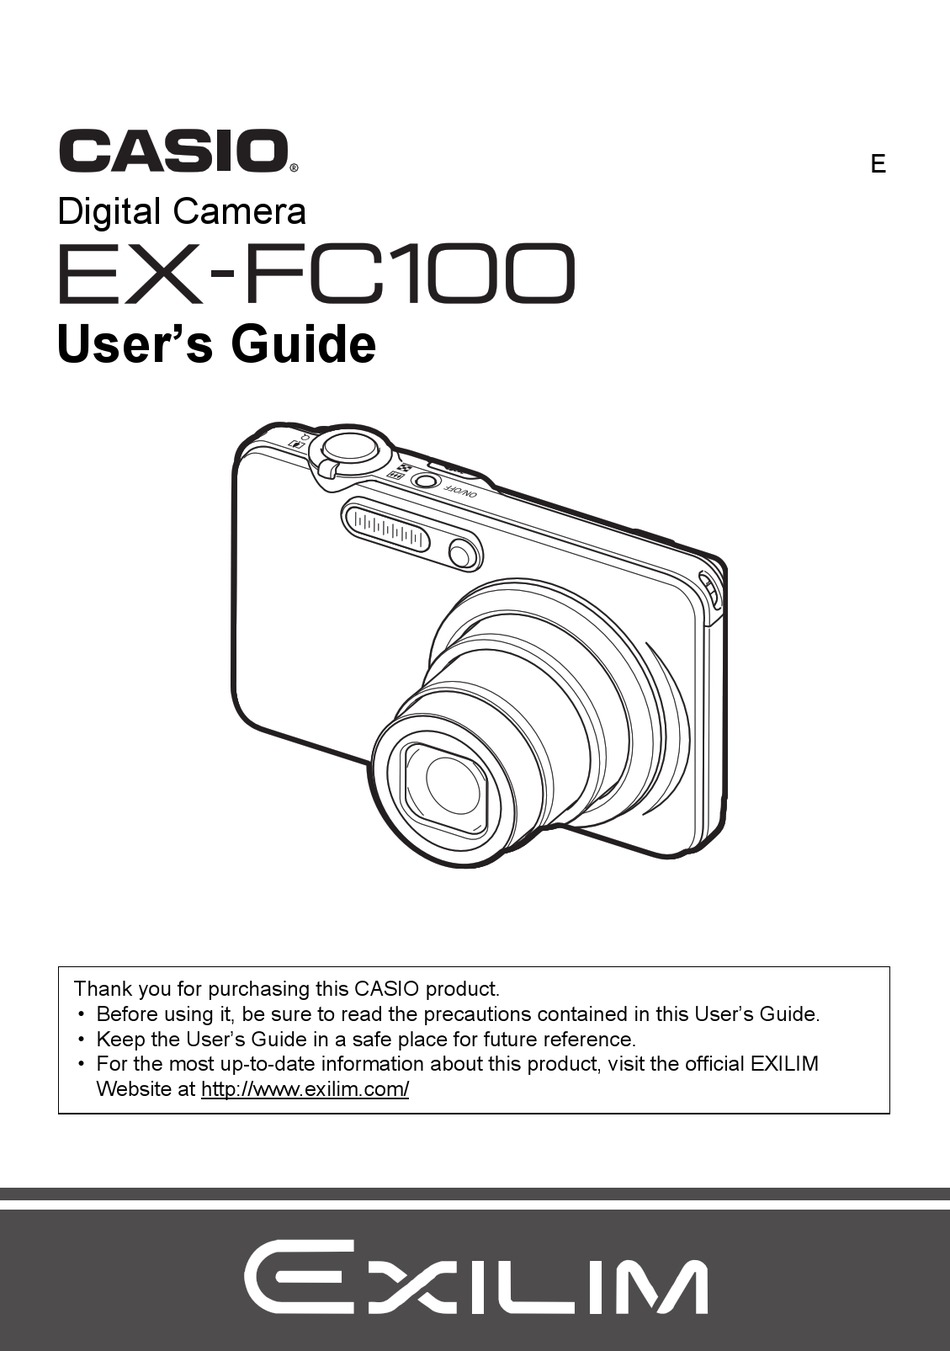 CASIO EXILIM EX-FC100 USER MANUAL Pdf Download | ManualsLib